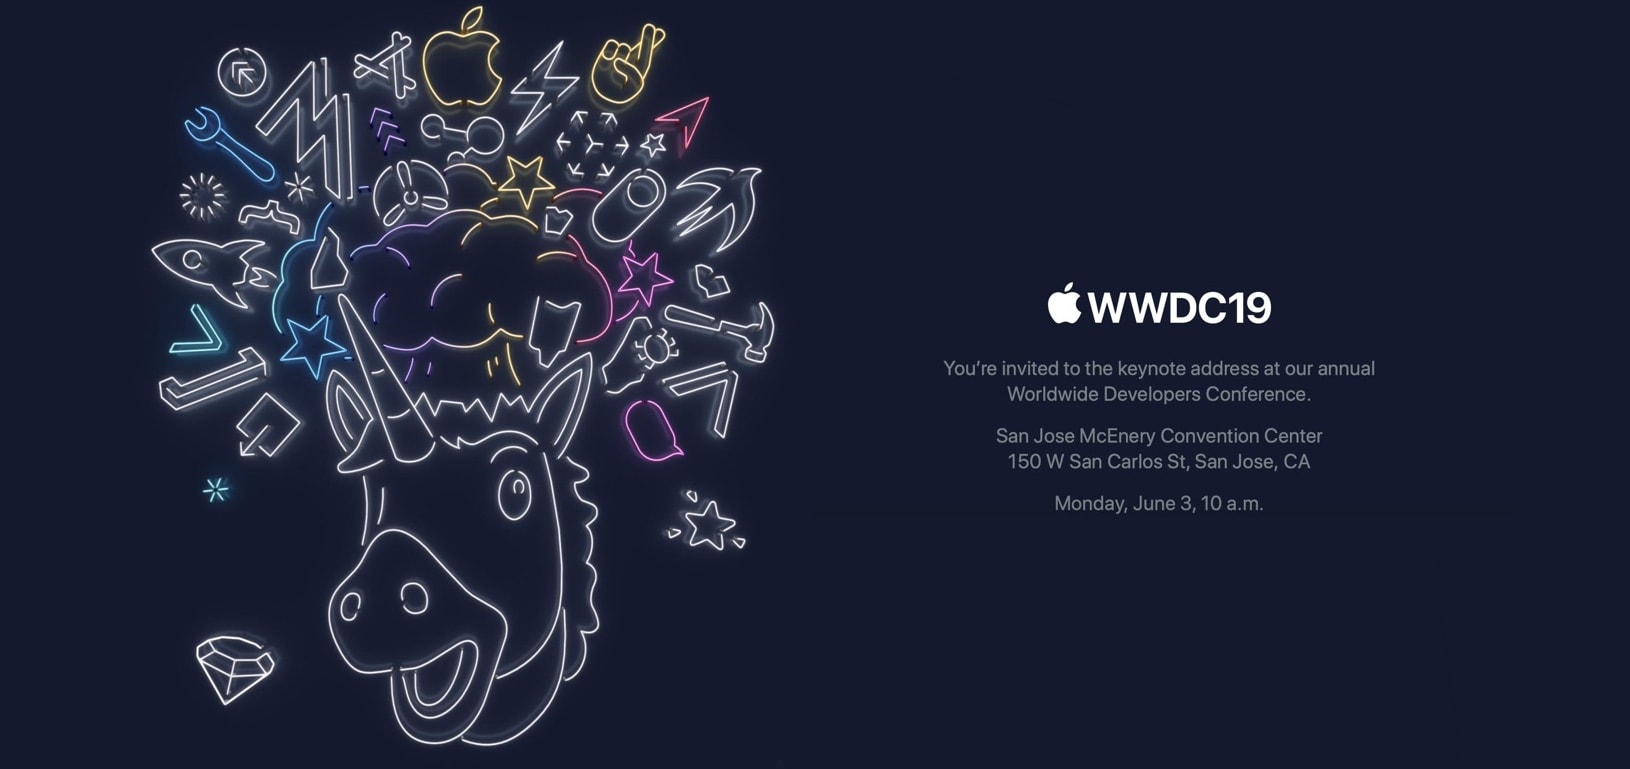 WWDC 2019 invitation